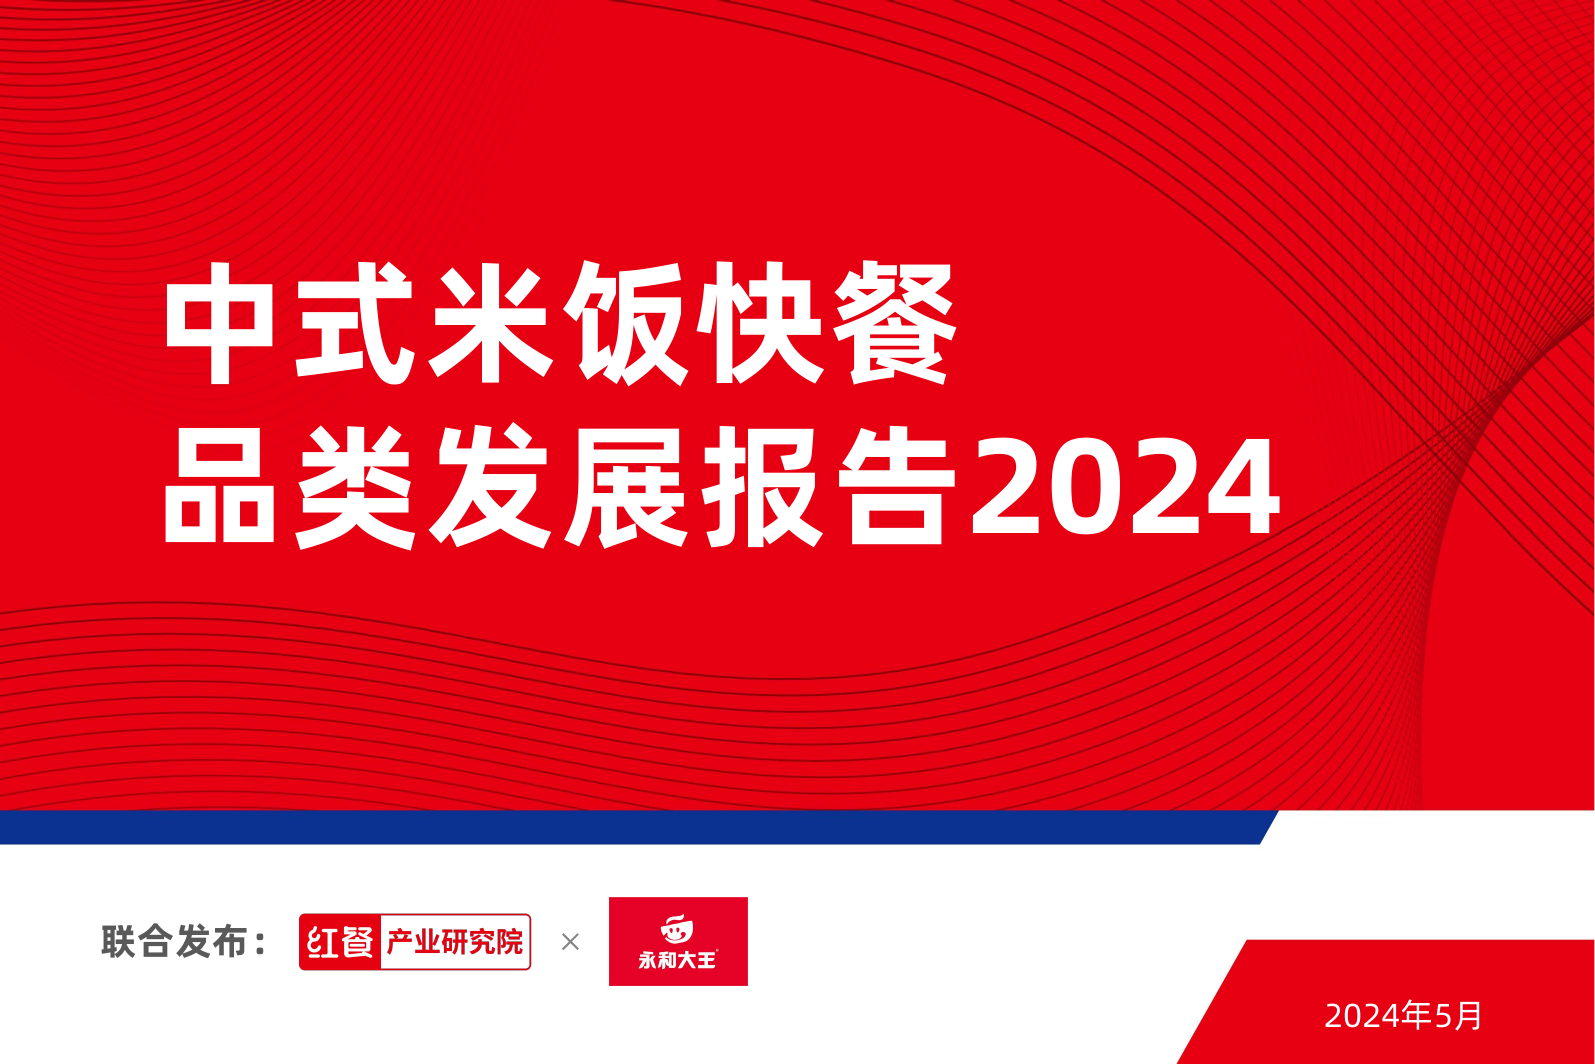 中式米饭快餐品类发展报告2024-红餐产业研究院-202405.pdf